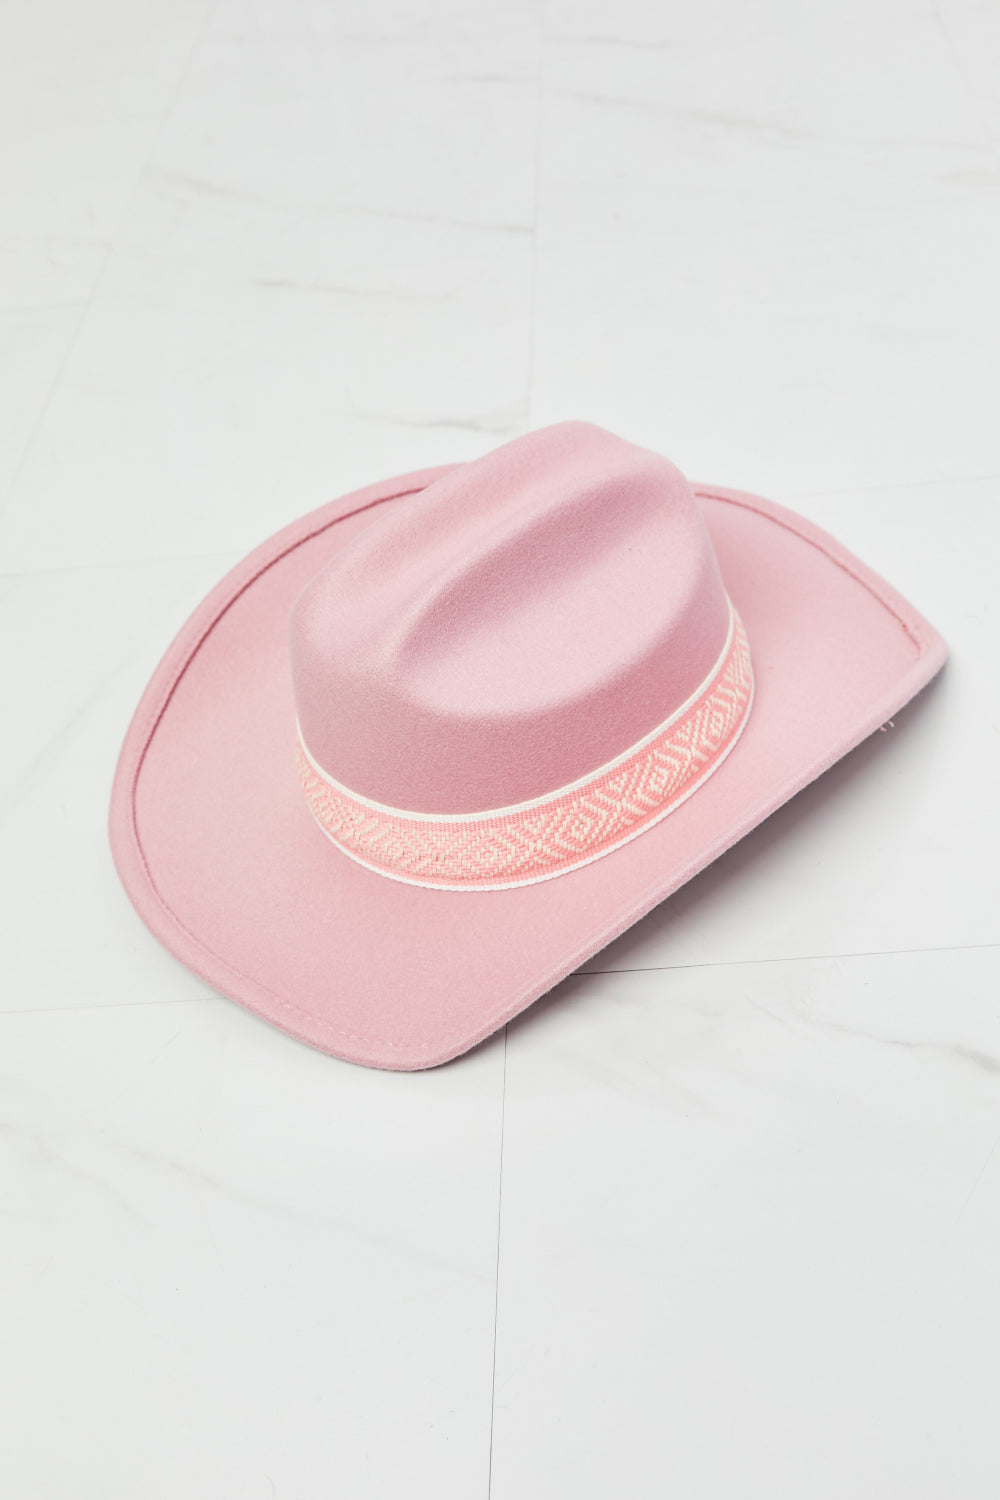 Fame Western Cutie Cowboy Hat in Pink | us.meeeshop